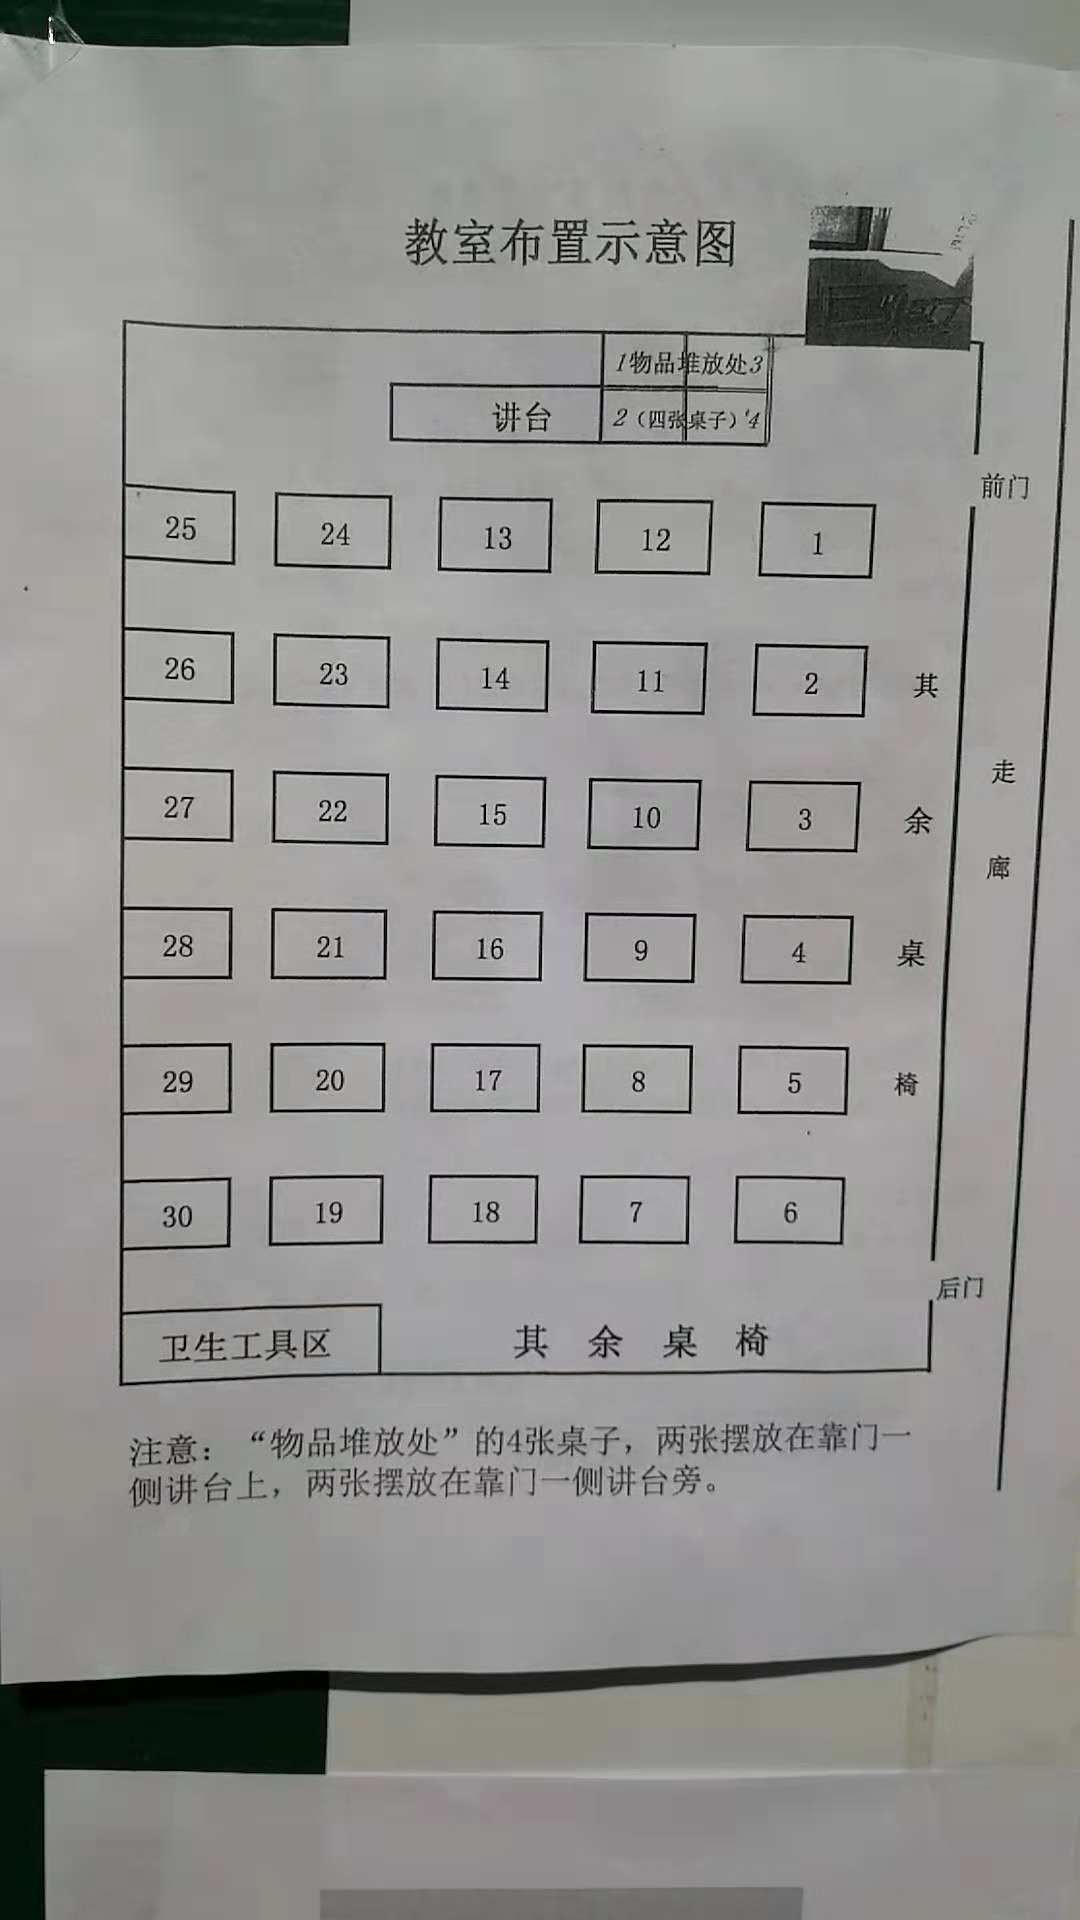 考试座位号模板图片